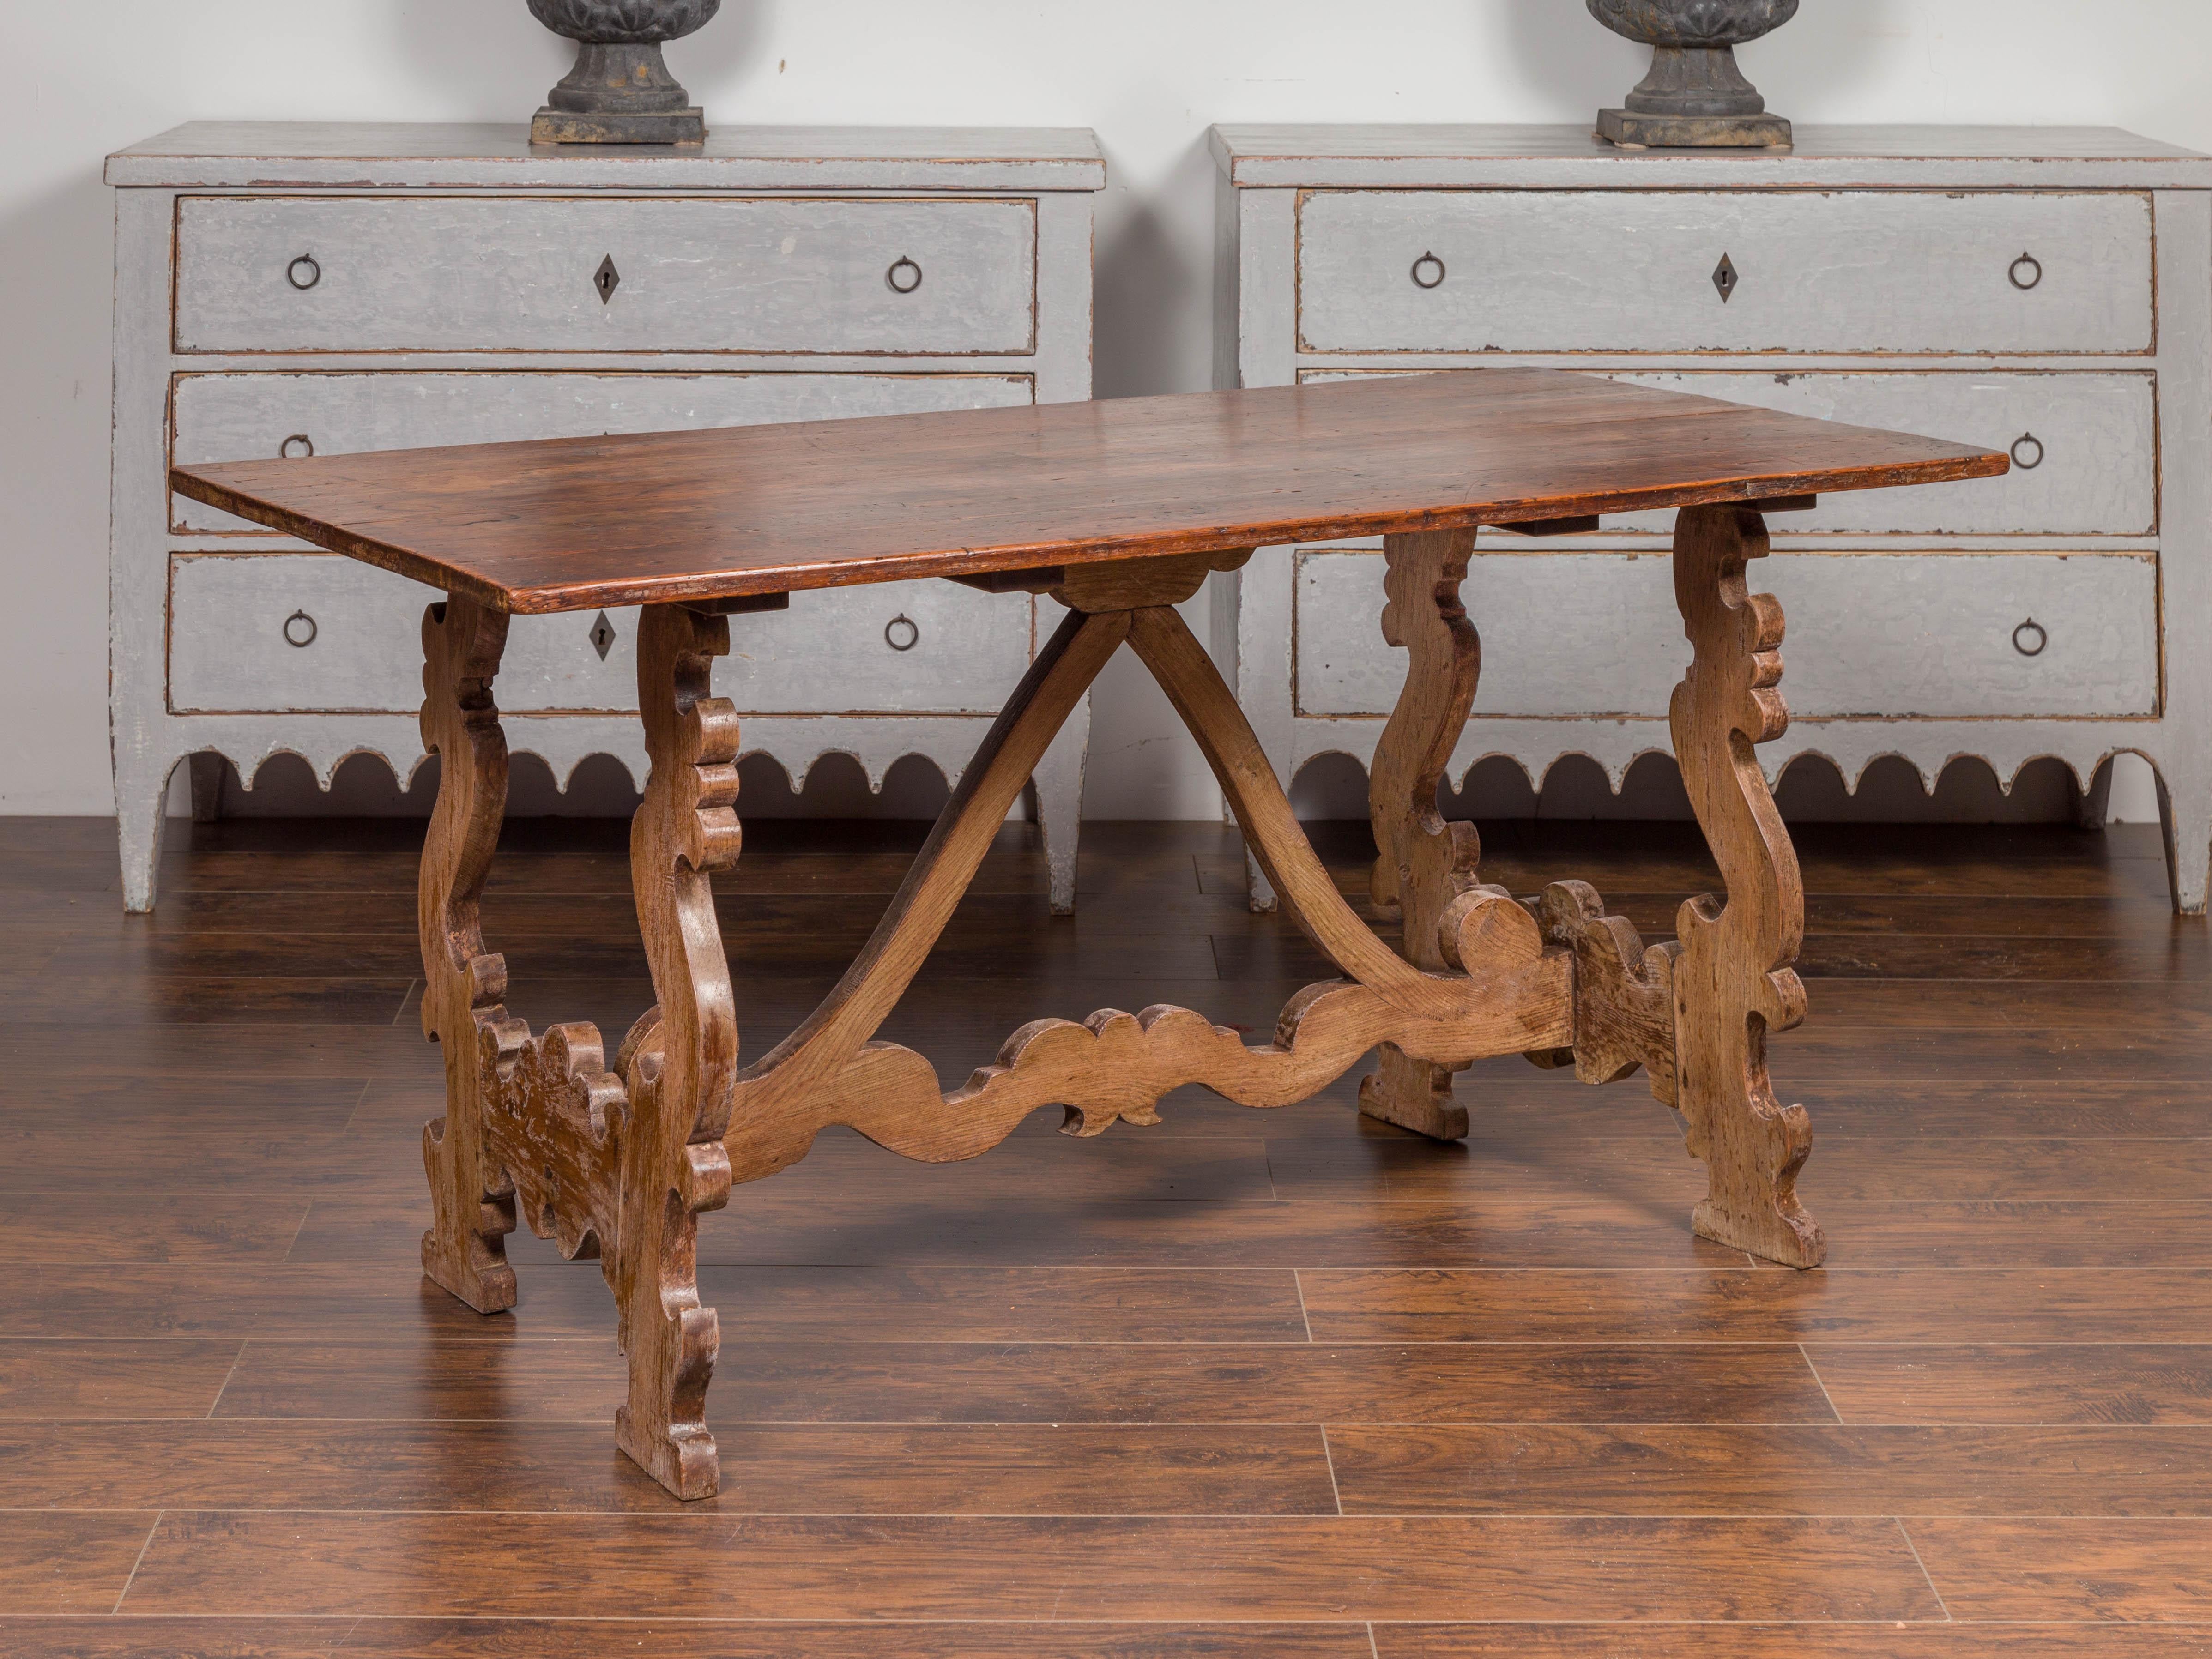 Cette table console espagnole Fratino du milieu du XIXe siècle présente un plateau rectangulaire avec une belle patine sur une base à tréteaux de style baroque. Deux pieds en forme de lyre sont reliés l'un à l'autre ainsi qu'au plateau de la table